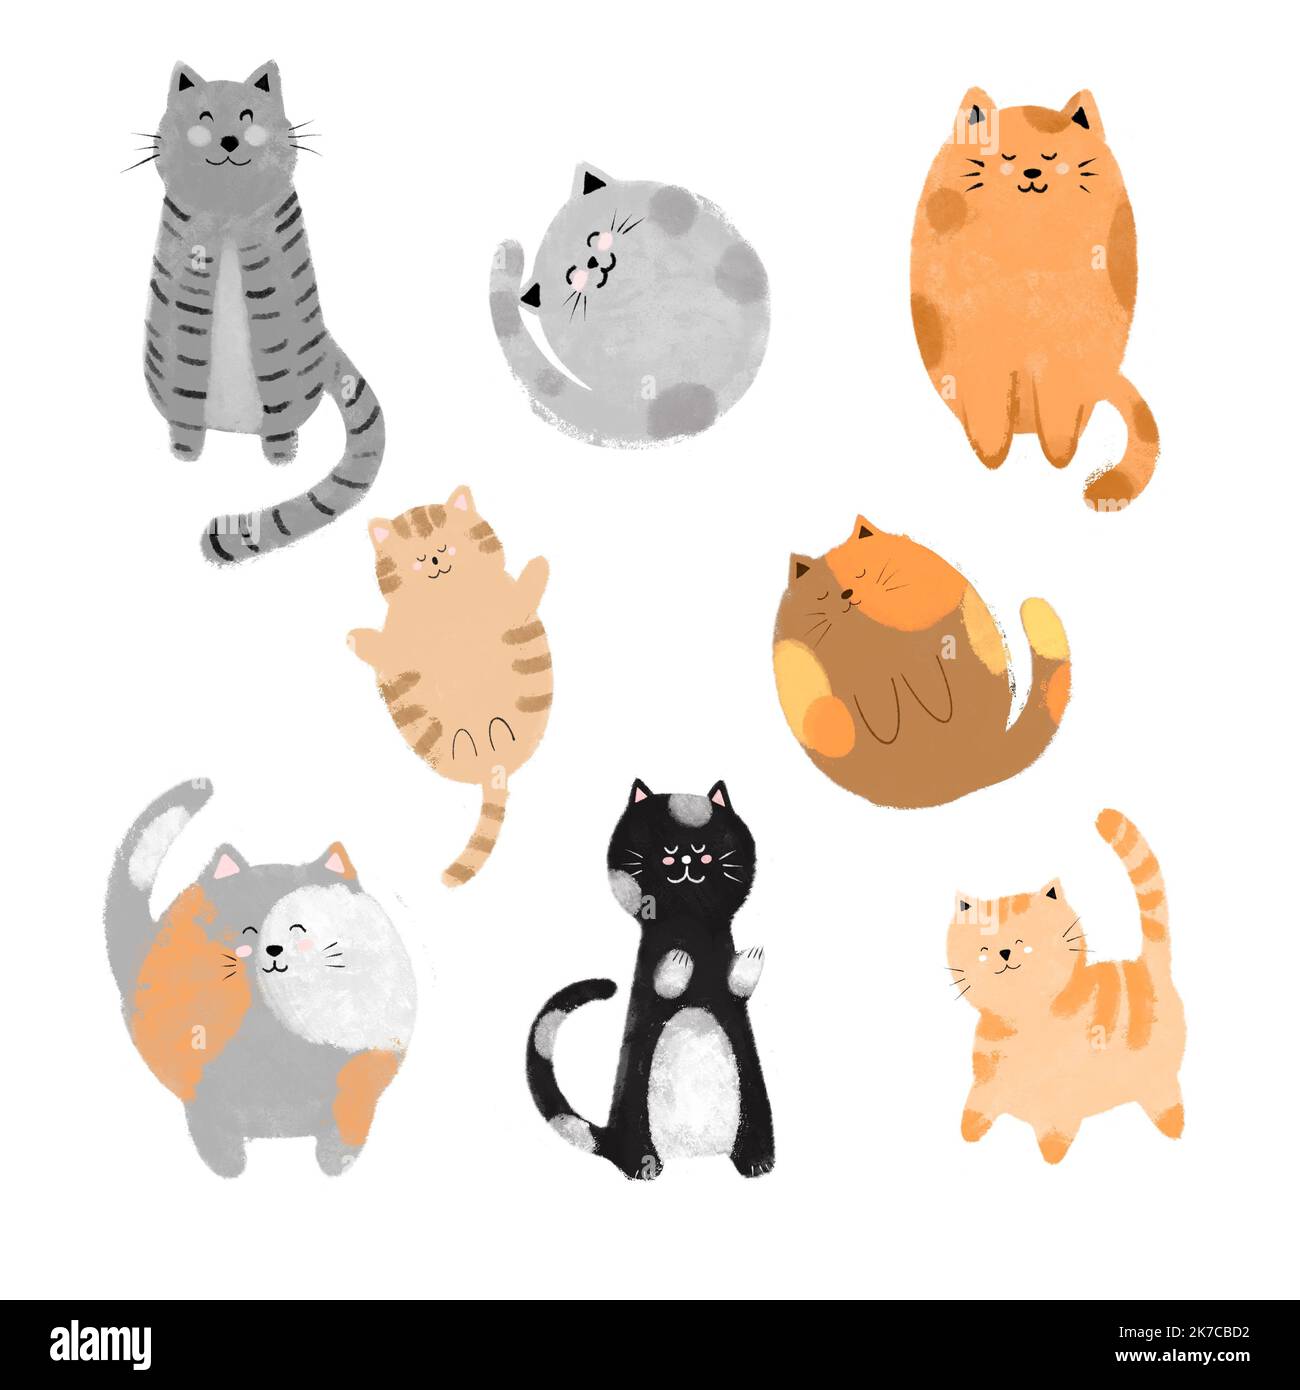 Illustration de chats mignons et drôles dessinés à la main. Collection de dessins animés de chats ou de chatons avec une couleur plate dans différentes poses Banque D'Images